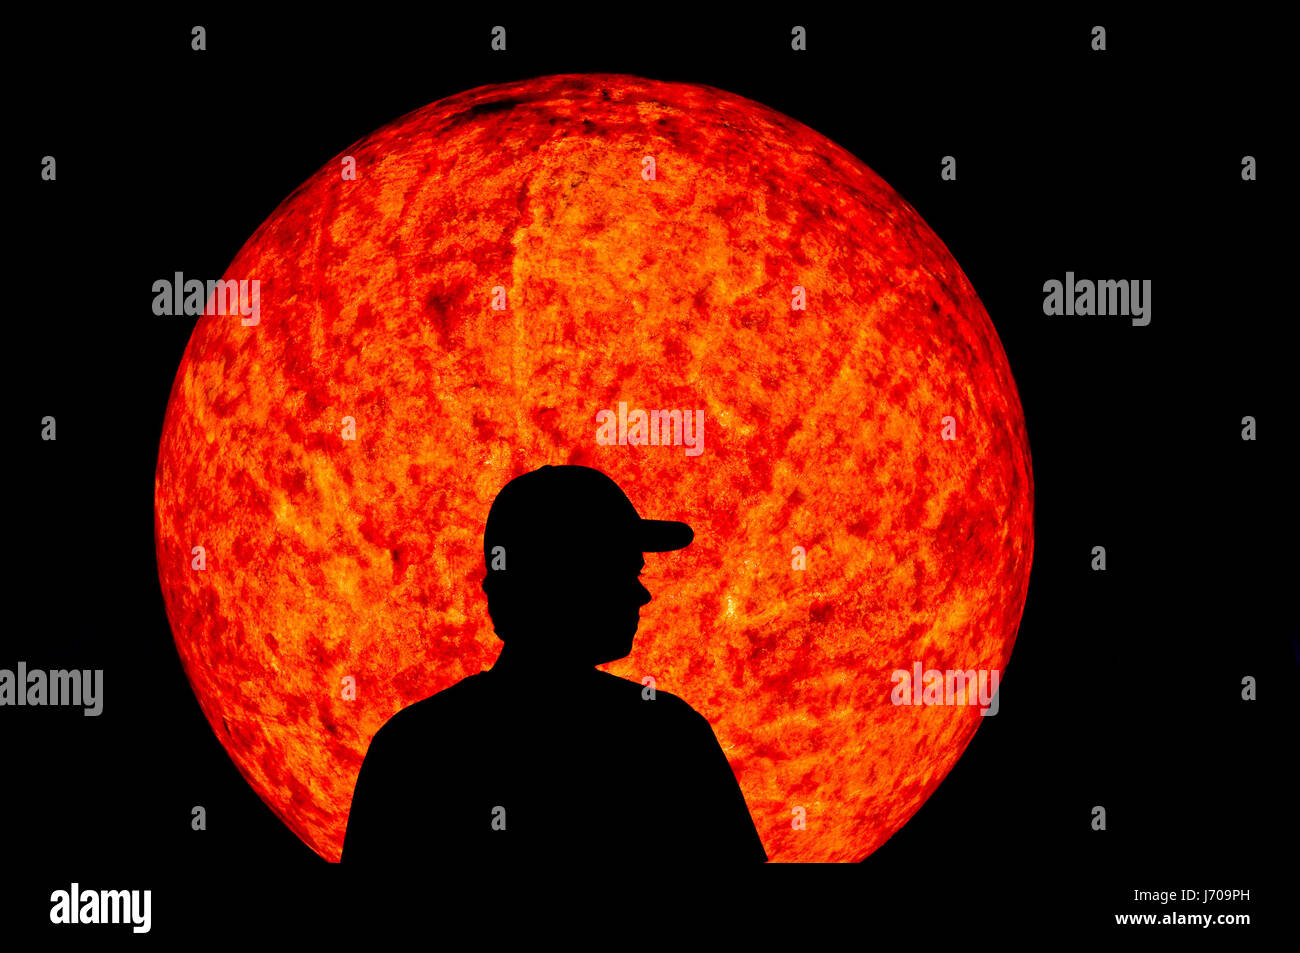 Weltraum sonne silhouette gegenlicht sterne weltall sonnensystem planeten Foto Stock